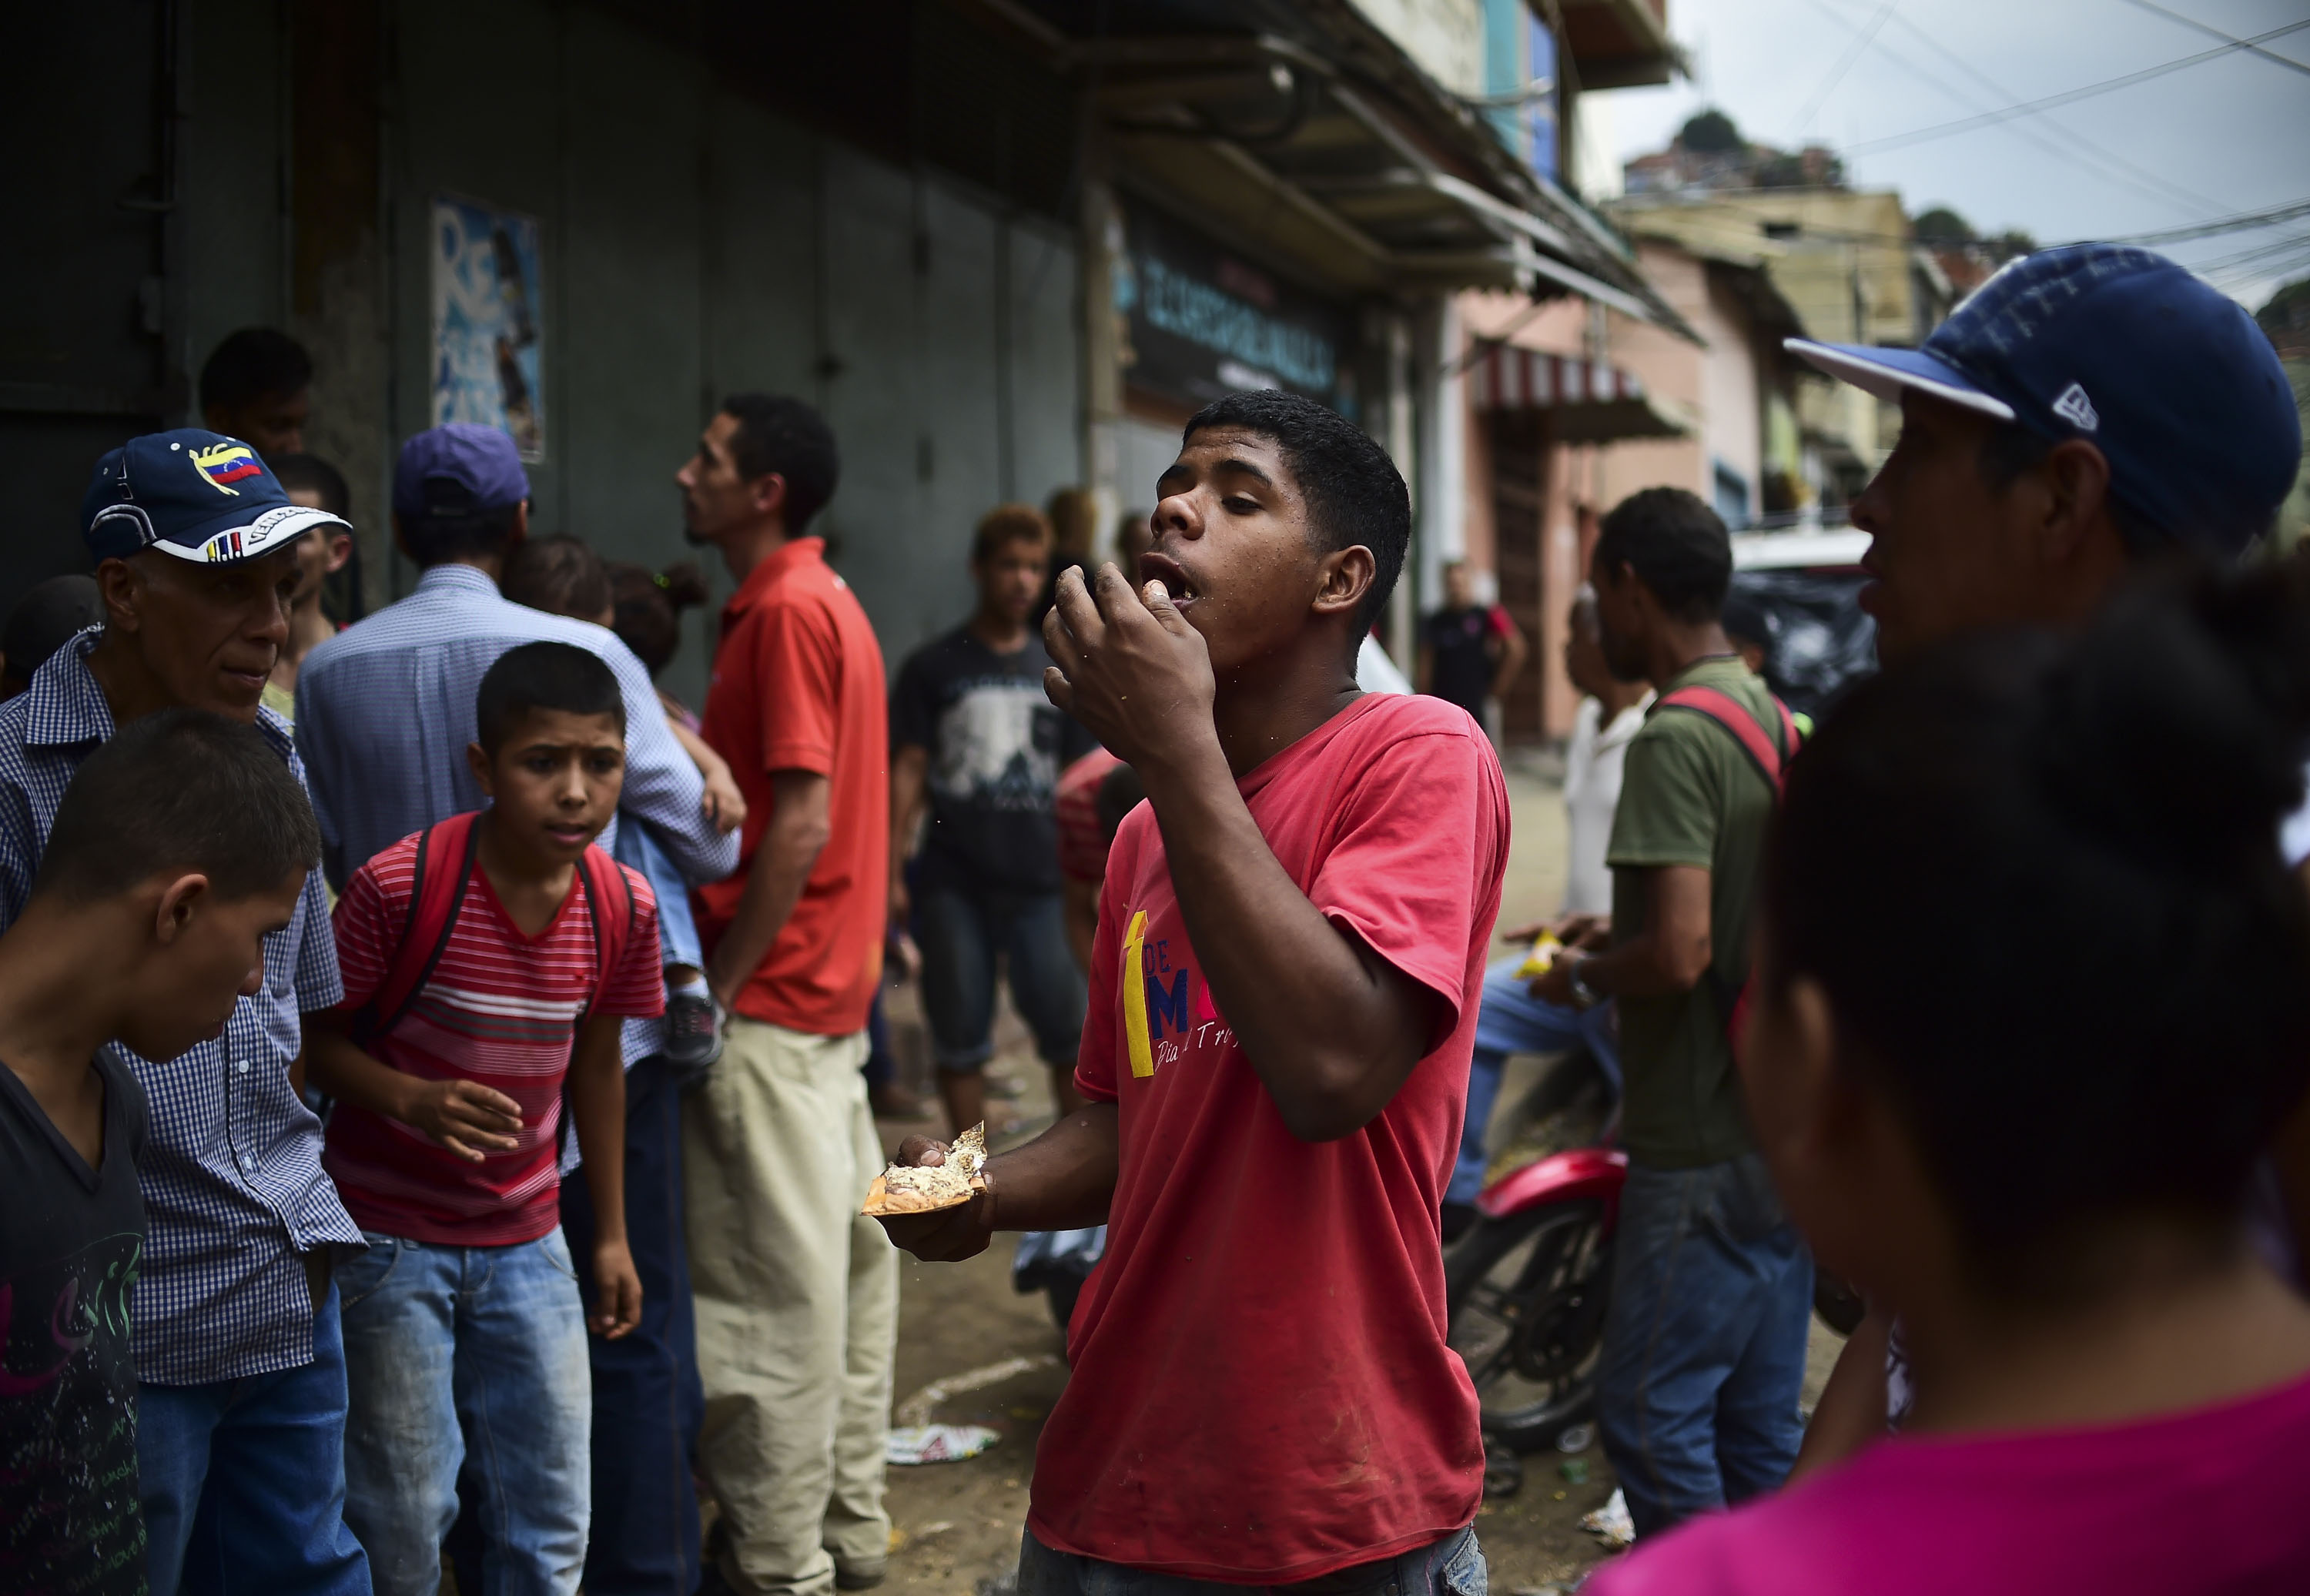 Muerte, saqueos, hambre: Crónica de una batalla campal en Venezuela